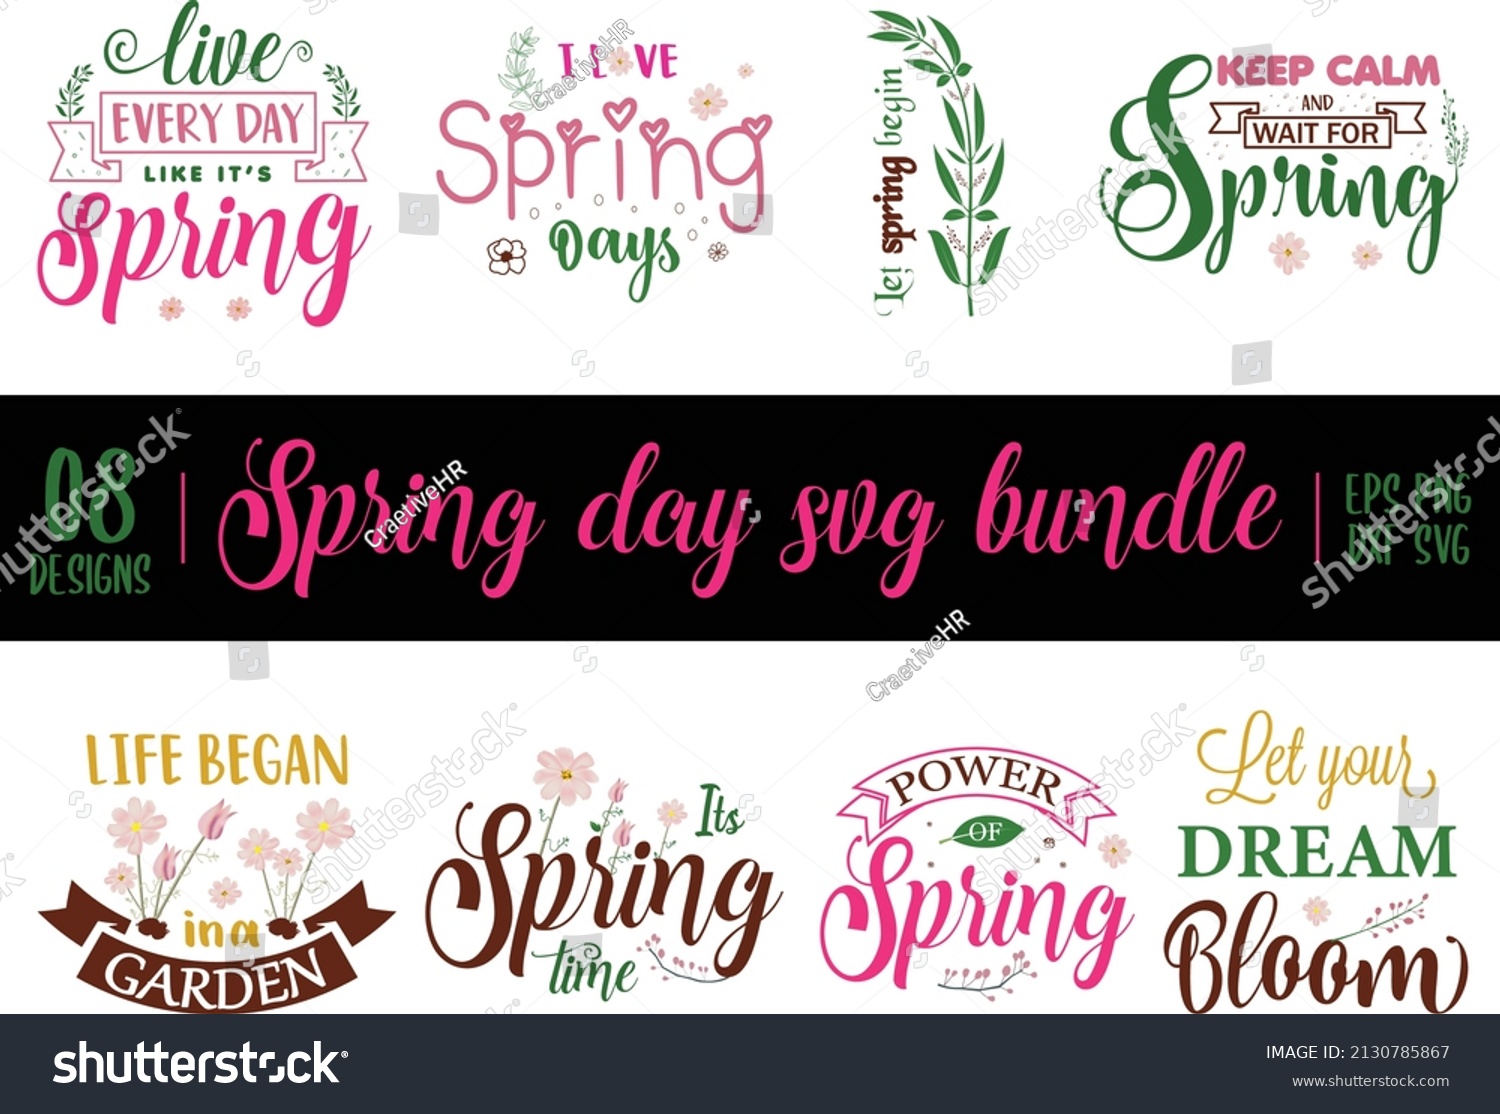 SVG of Spring Day Svg Bundle, Spring Day Svg Design calligraphy Lettering quote illustration vector svg